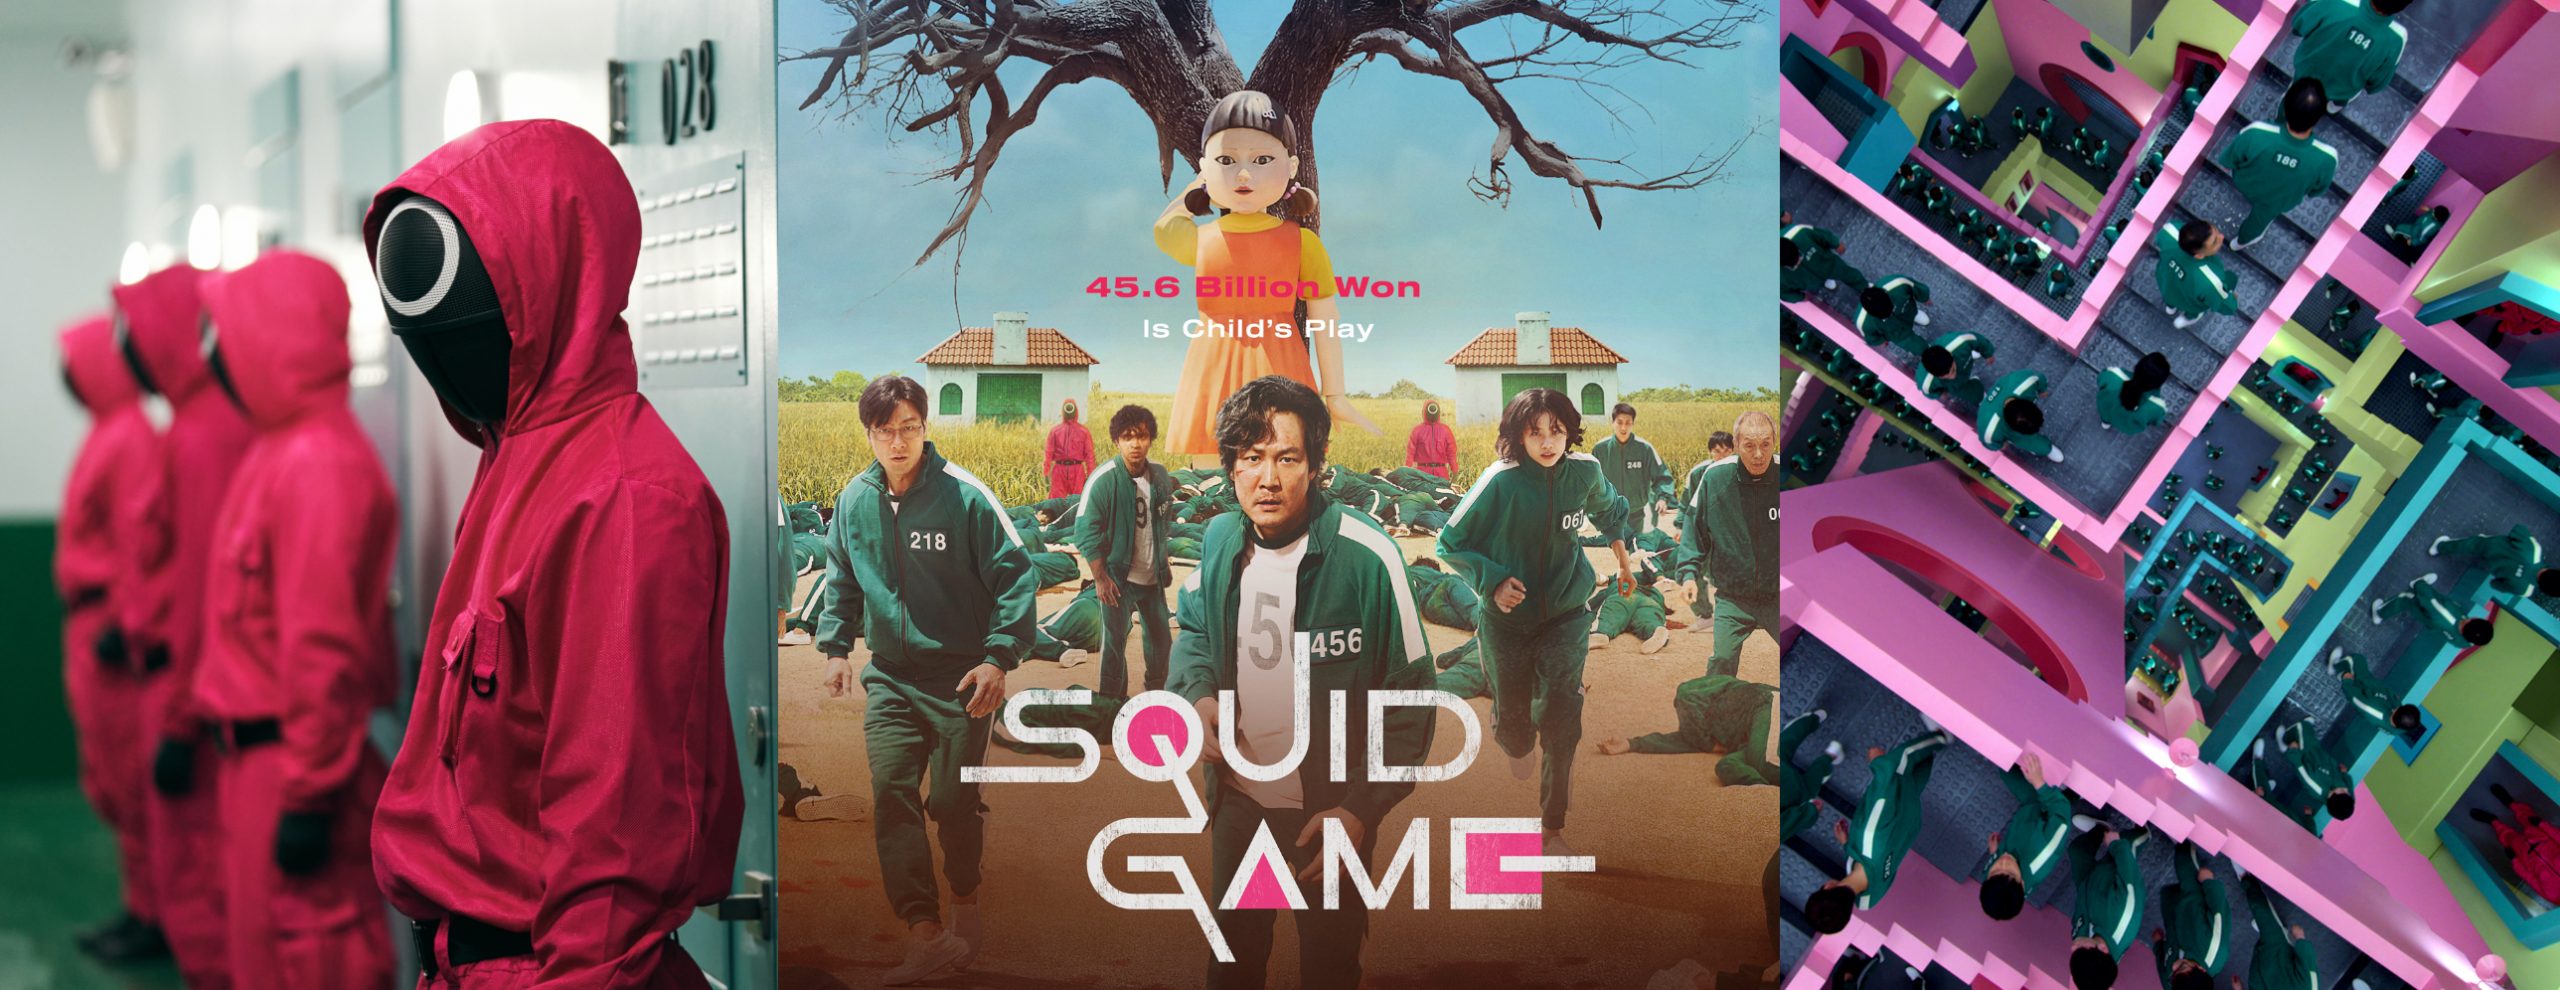 Squid game korean drama